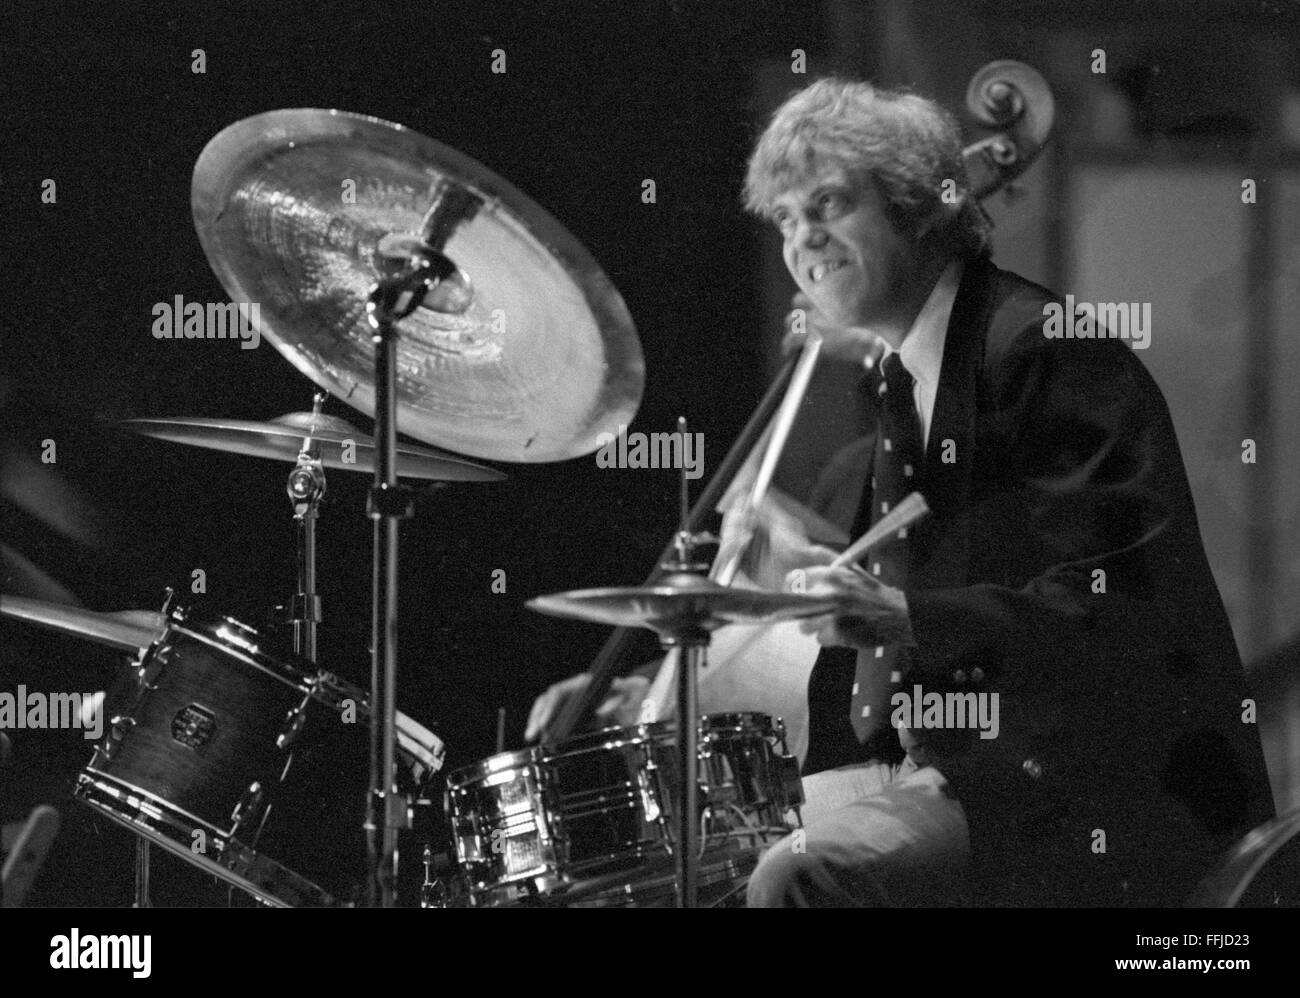 Jazz-Schlagzeuger Butch Miles, auf der Bühne Ausführung. Dieses Konzert fand im "Großen Auditorium" in Ocean Grove, vielleicht als Teil der Jersey Shore alle amerikanischen Jazzkonzert-Serie. Das Datum ist unbekannt, aber es ist wahrscheinlich zwischen 1982 und 1985. Stockfoto